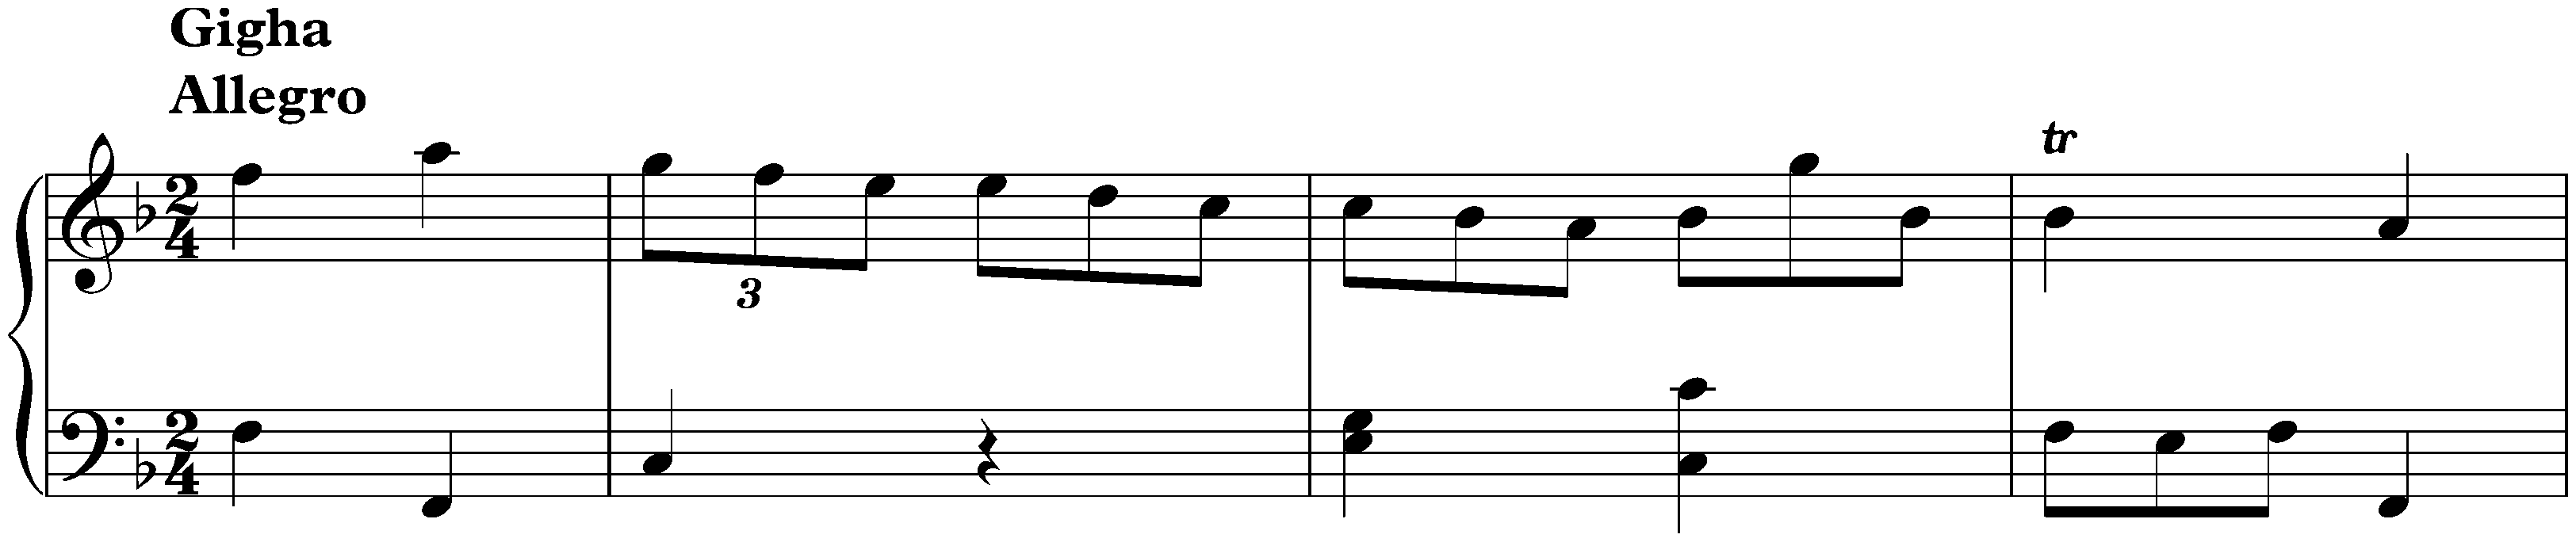 Sonata in F major, K. 78; 1. Gigha: Allegro